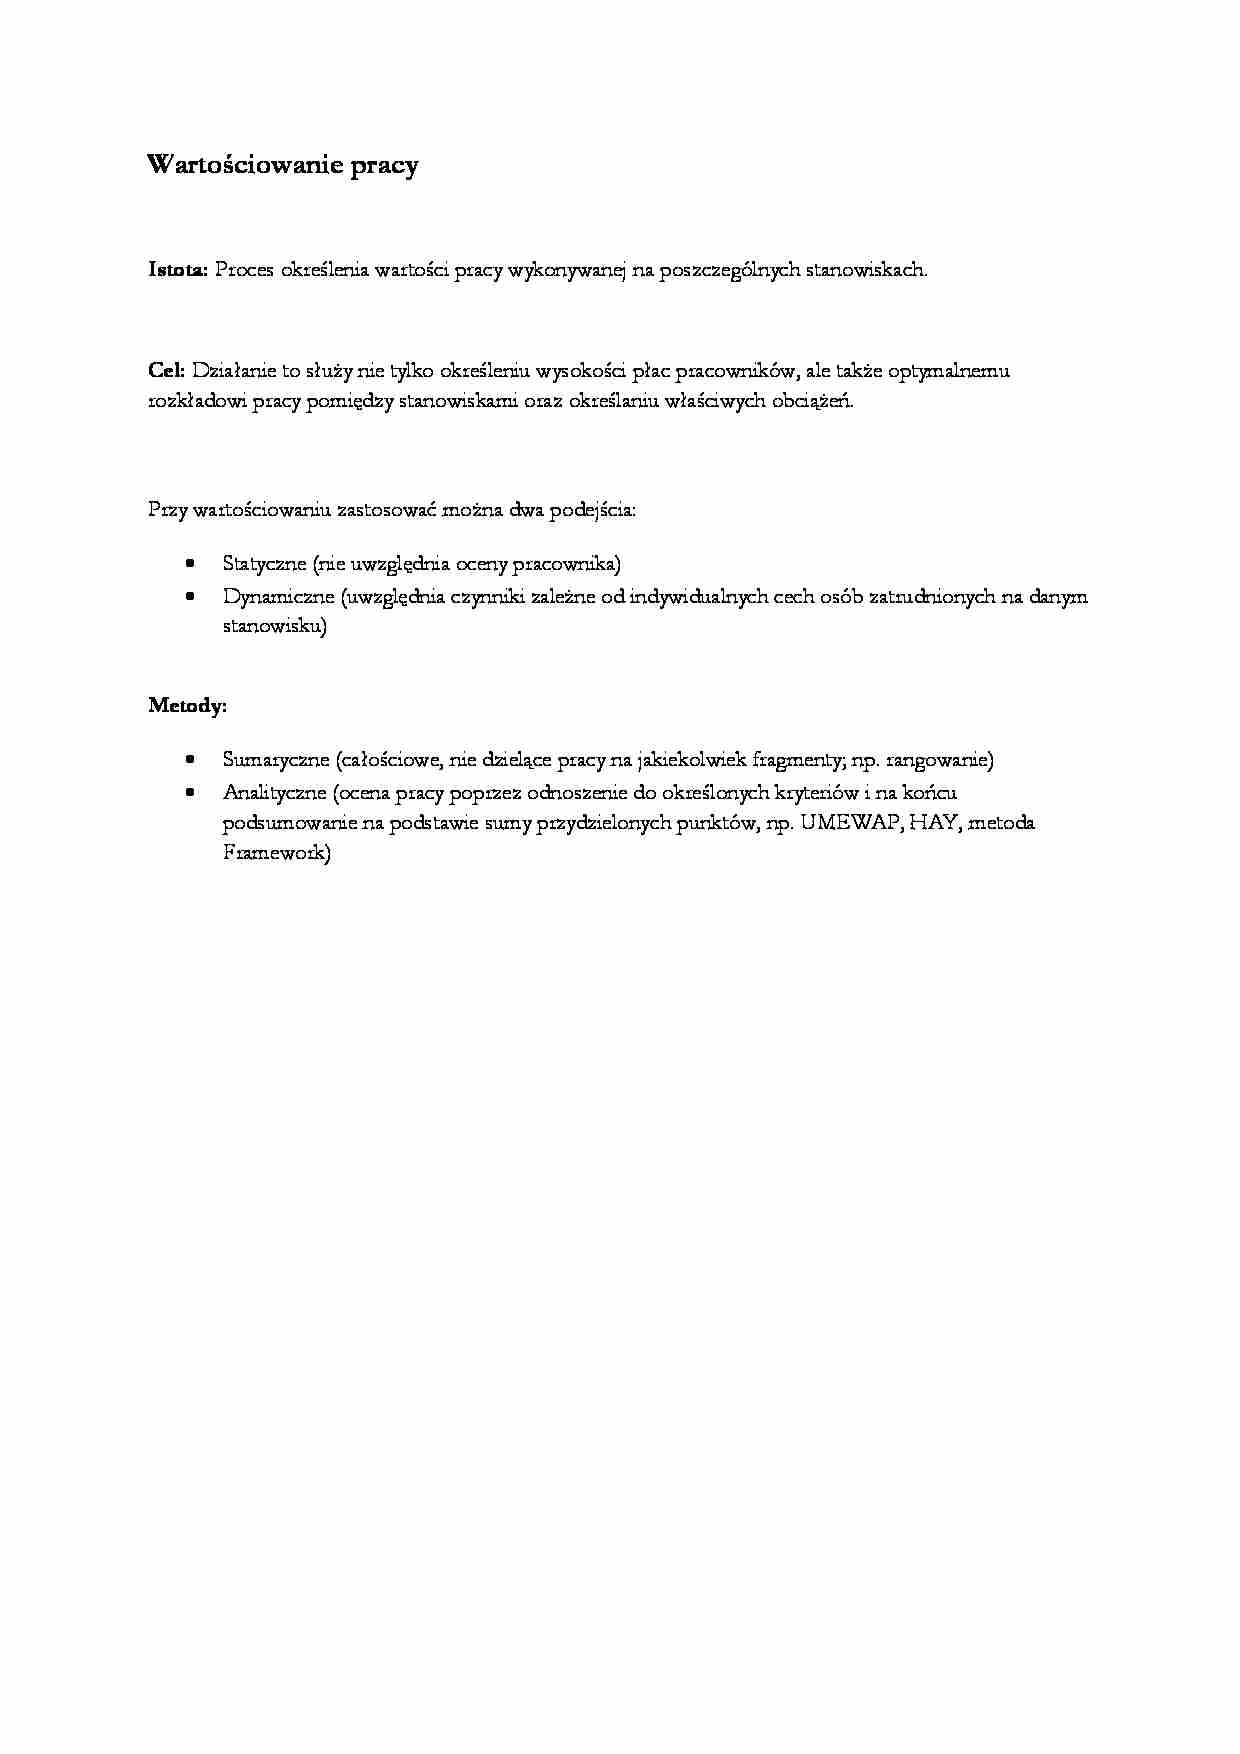 Wartościowanie pracy - istota i metoda - strona 1